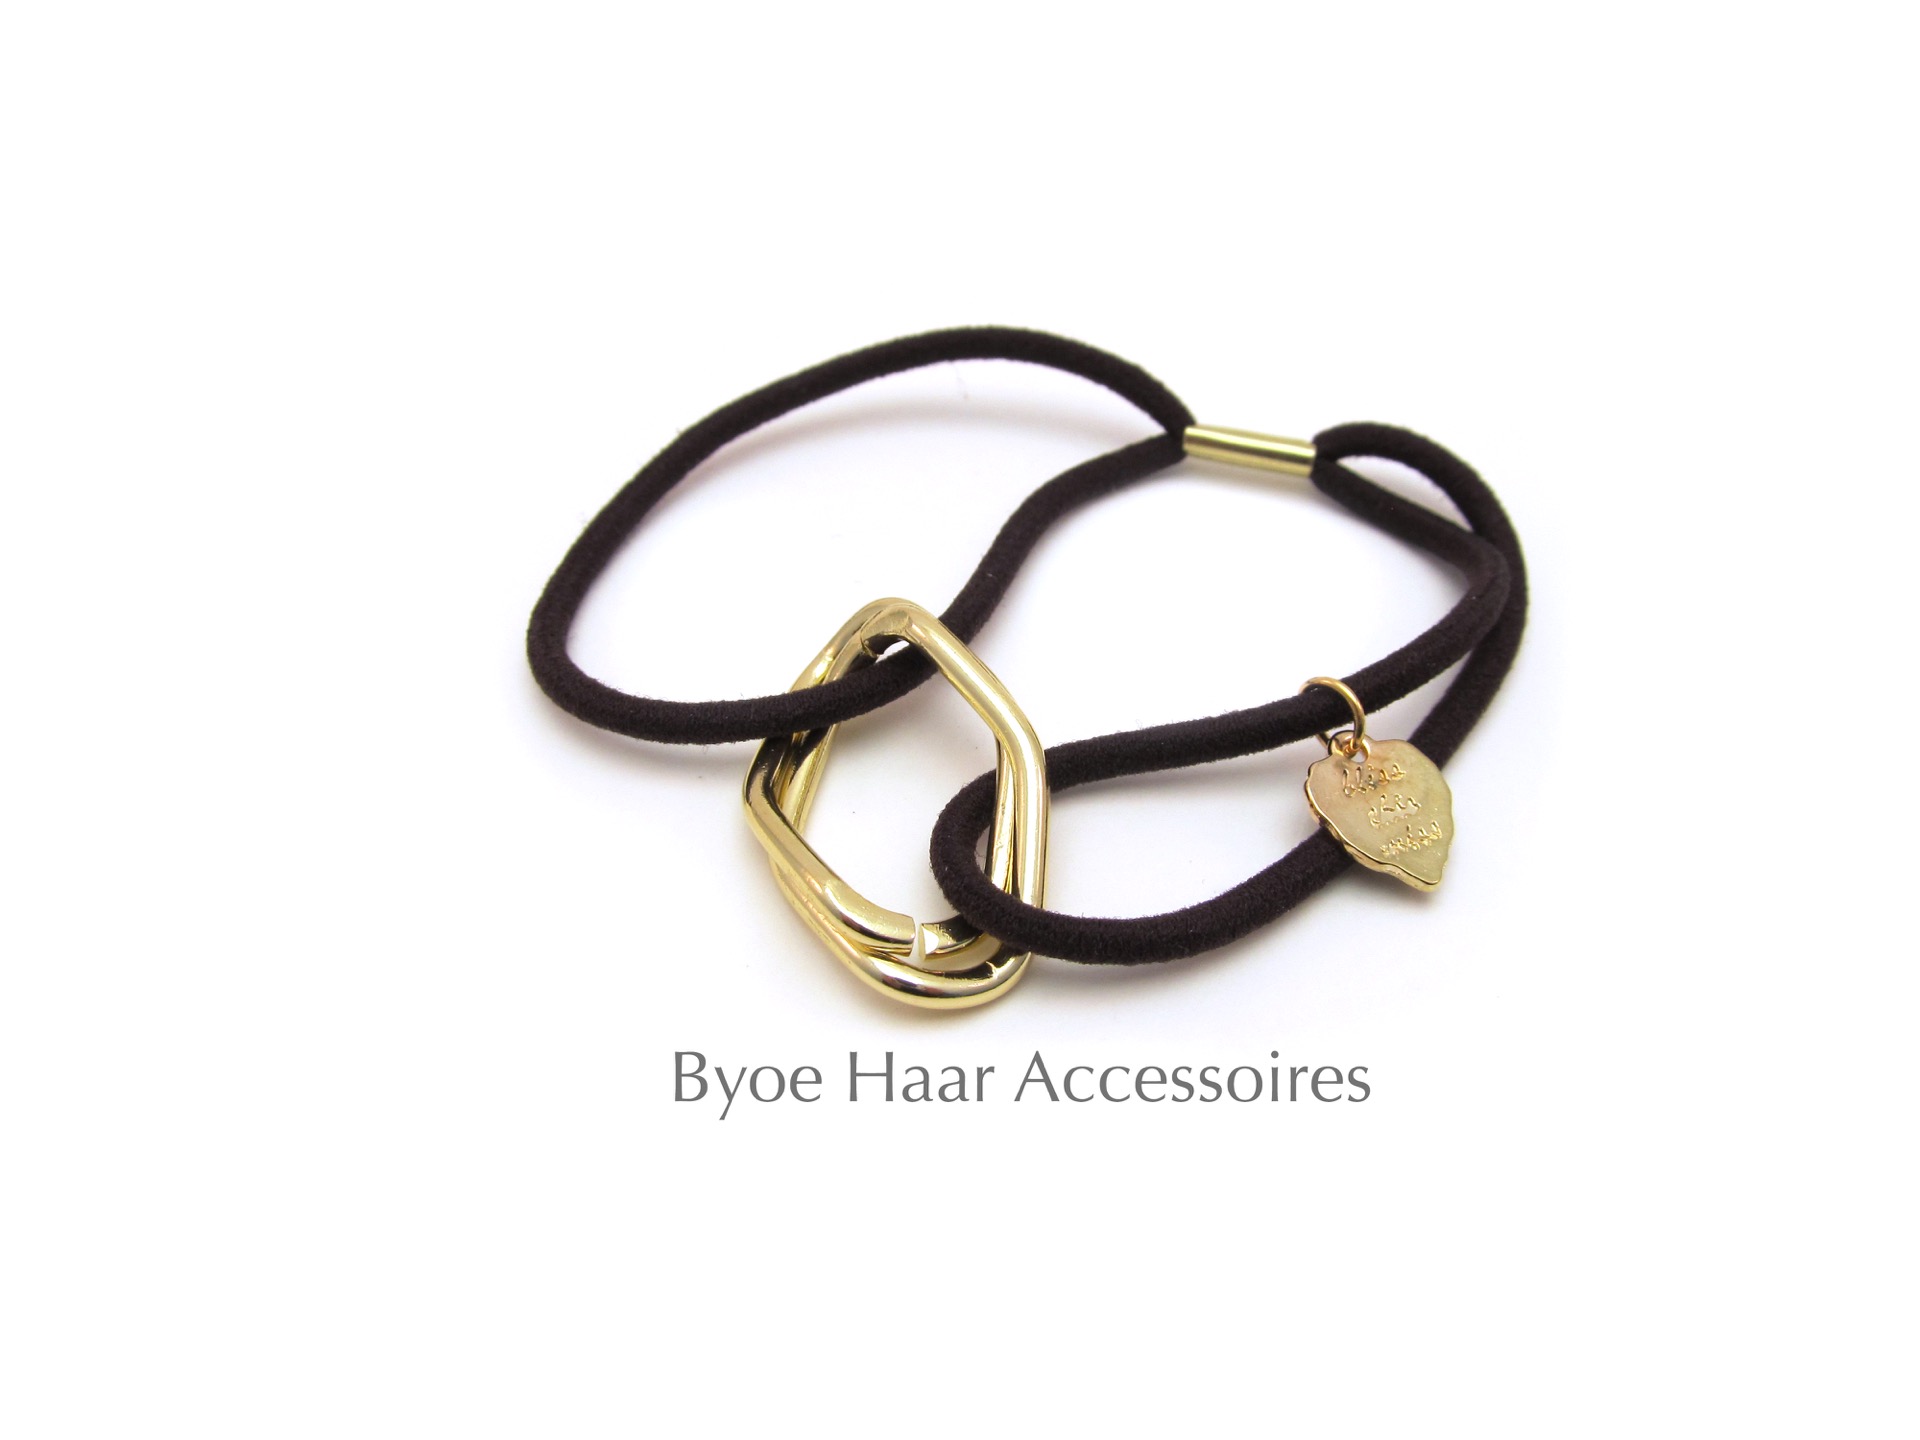 Haar gouden clip - Haar Accessoires - Handgemaakte Sieraden voor Haar | Byoe